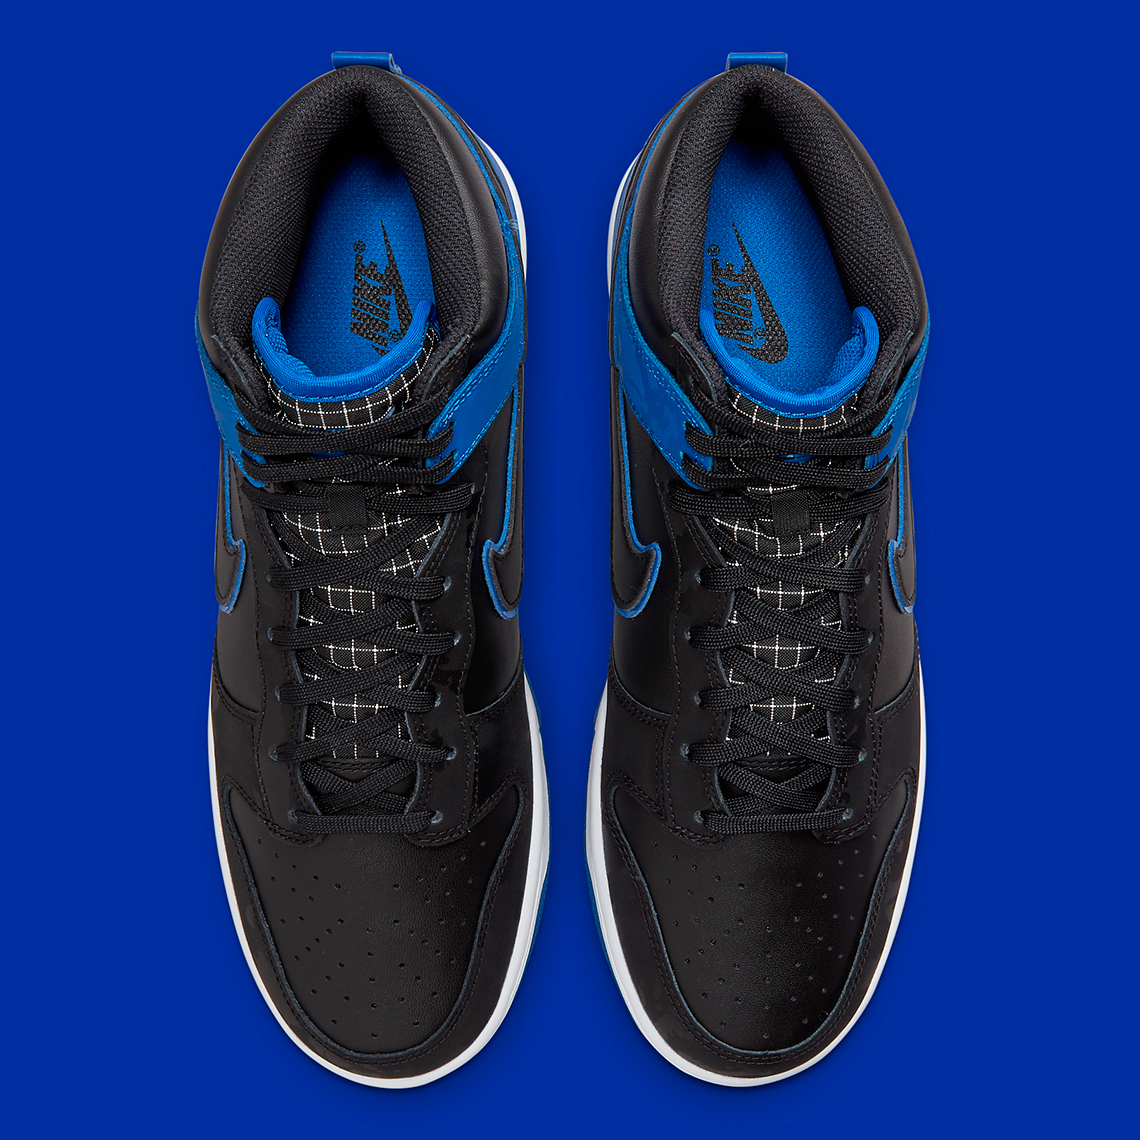 Nike Dunk High Blue Camo Dd3359 001 Release Date 5